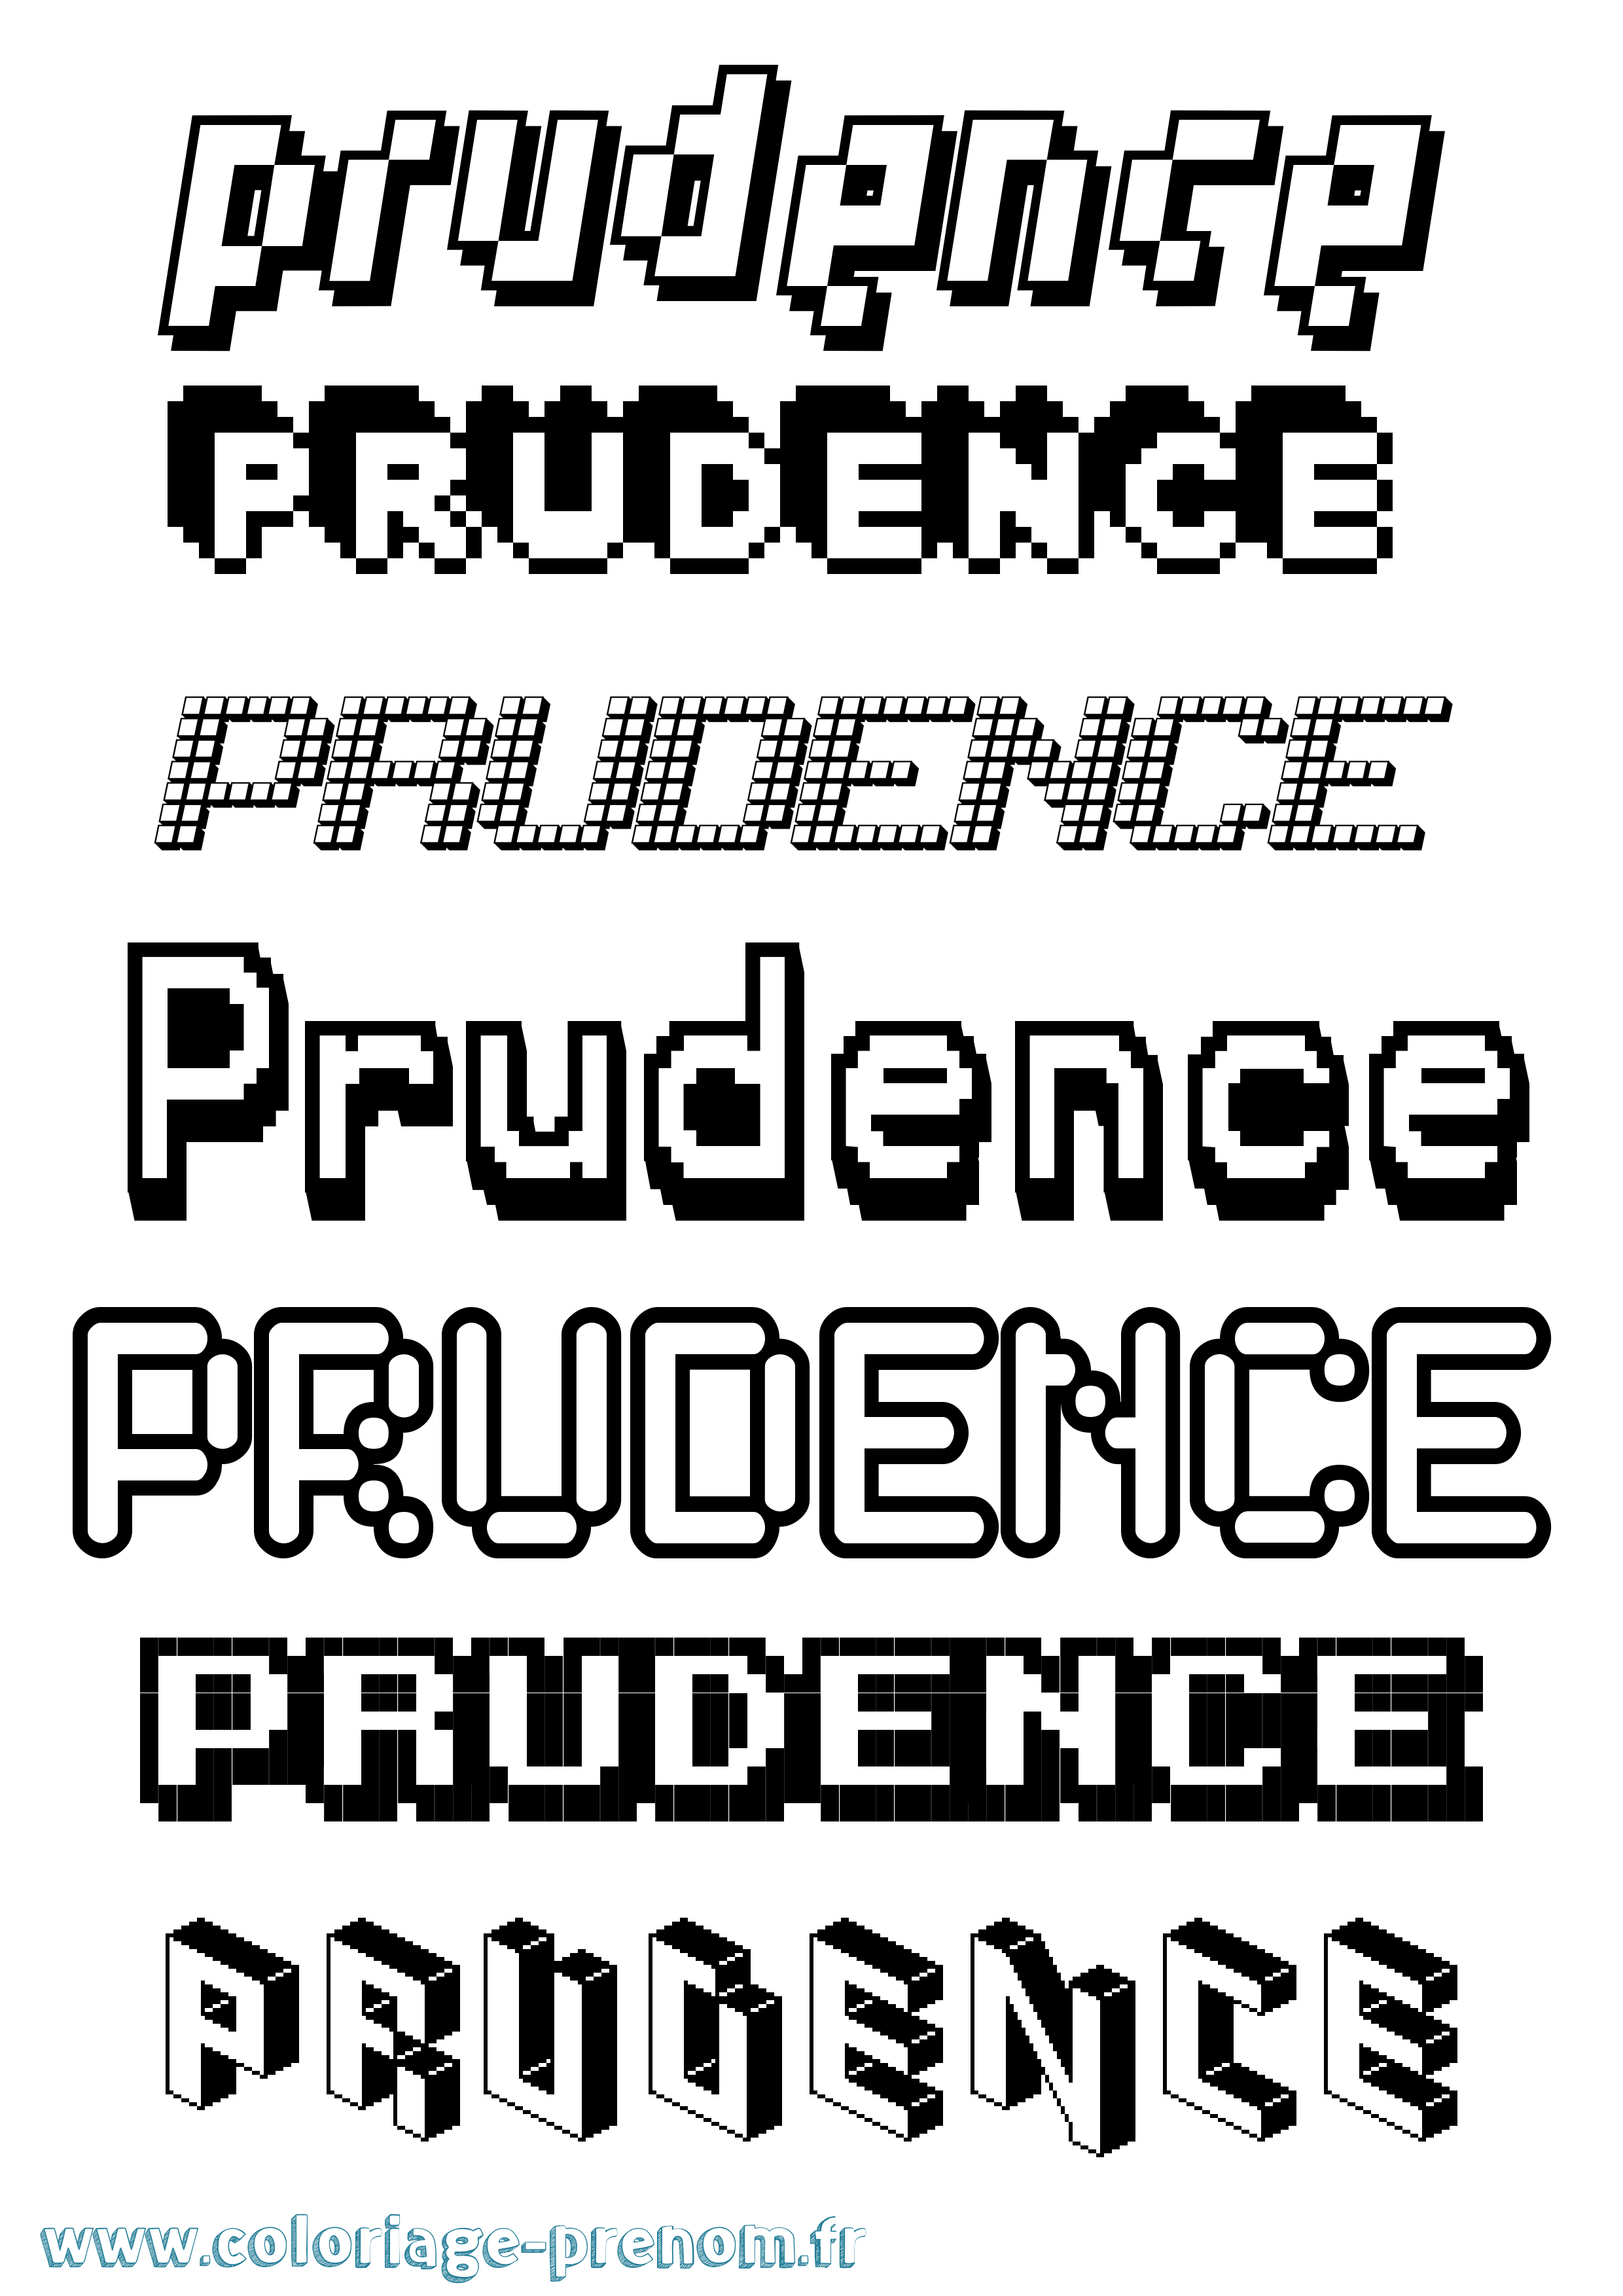 Coloriage prénom Prudence Pixel